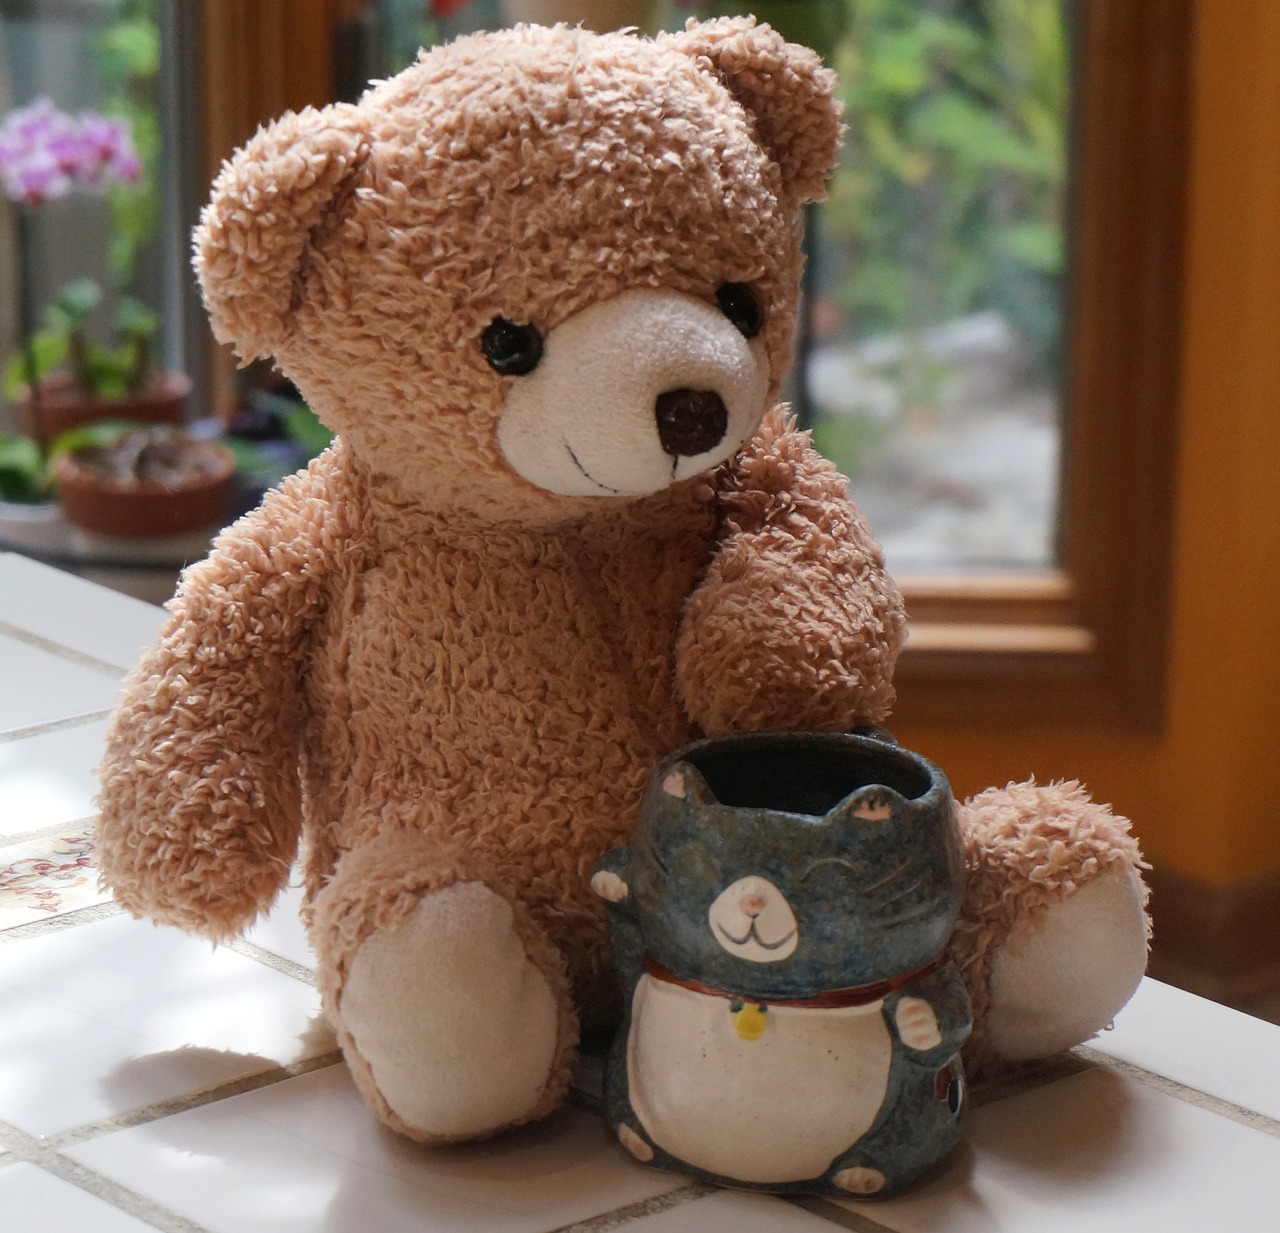 old teddy bear with mug teddy bear toy free photo